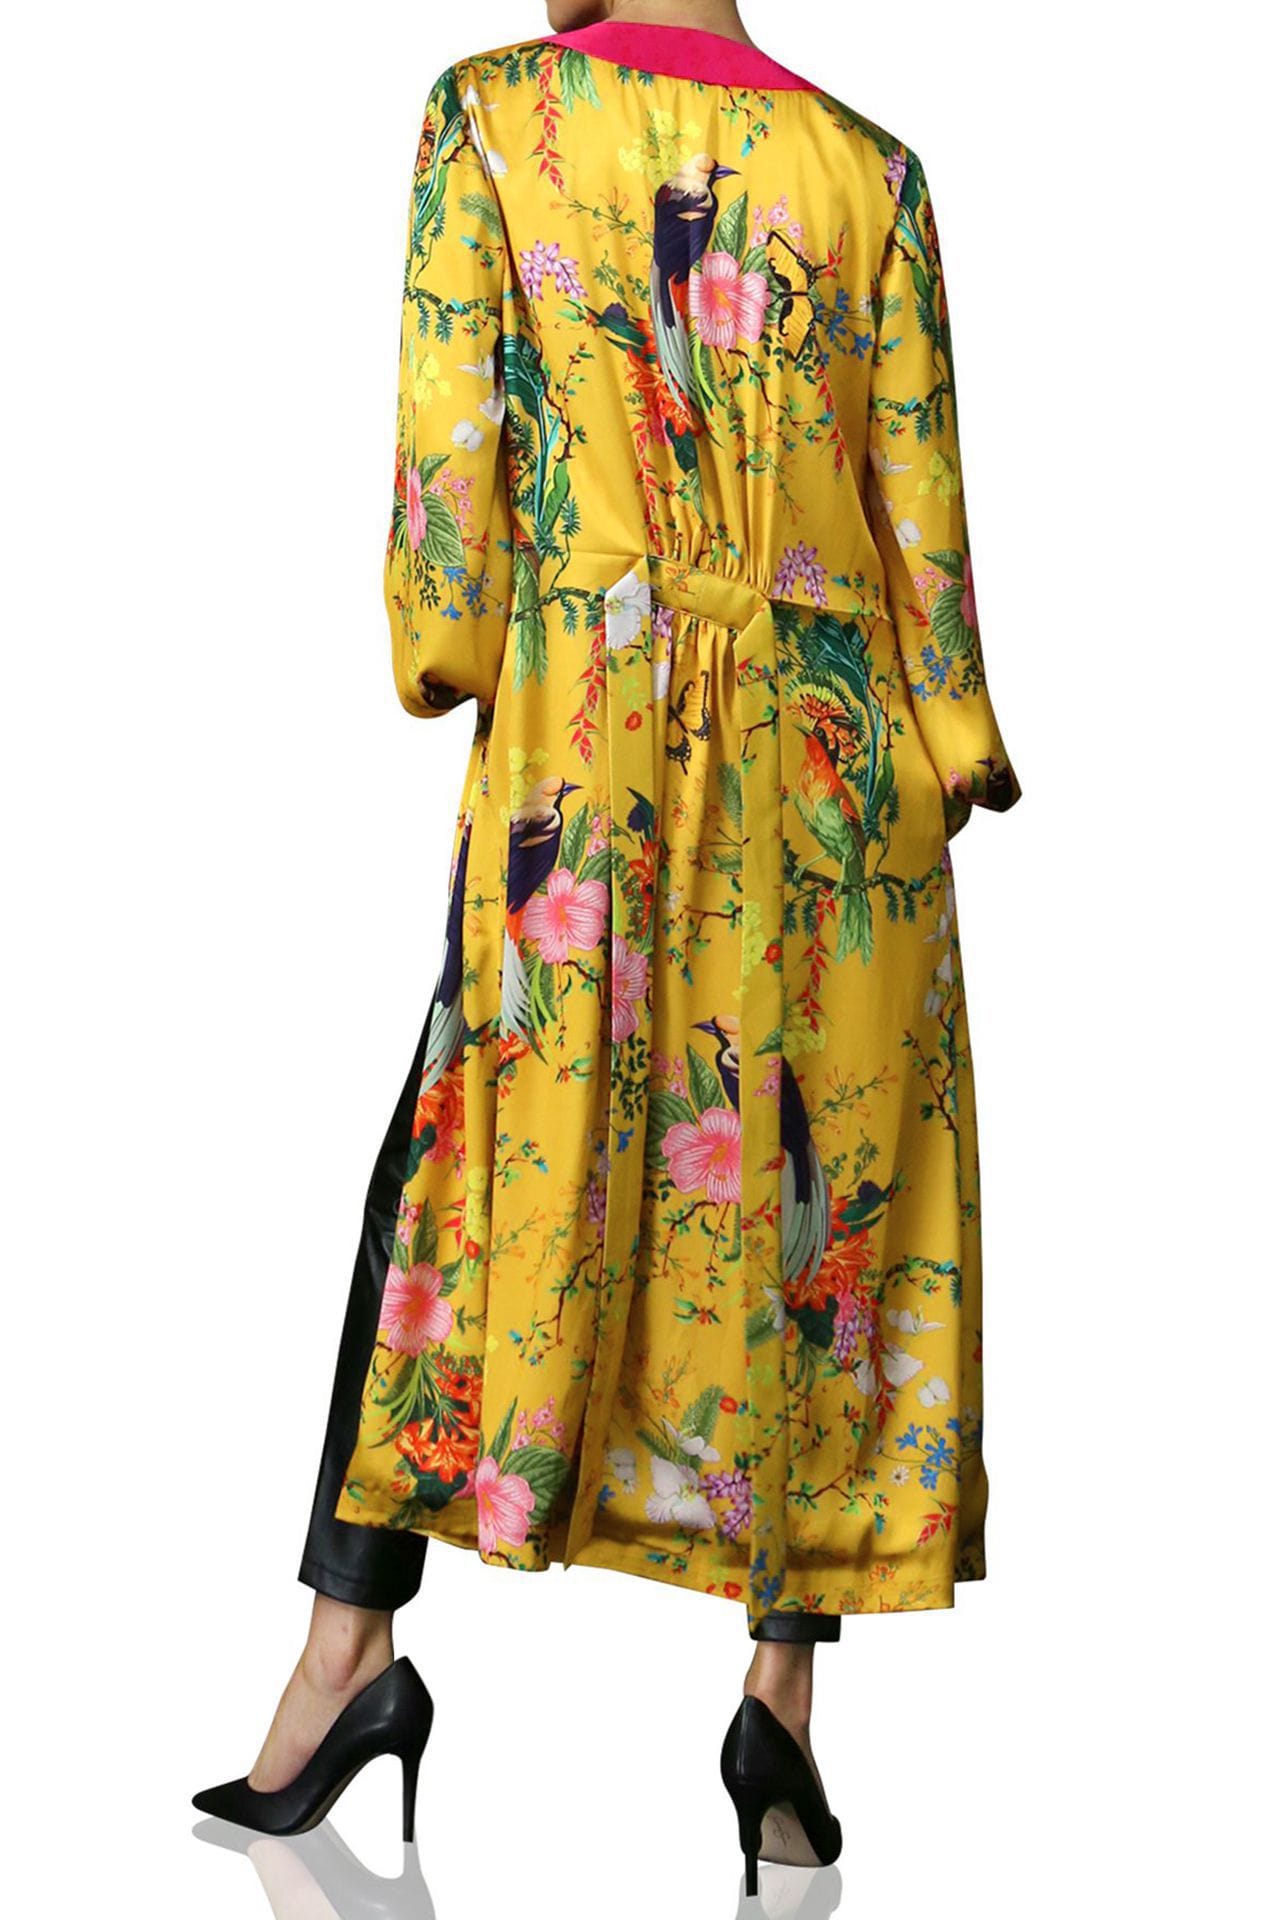 "Kyle X Shahida" "womens long kimono robe" "silk robes and kimonos" "long kimono robe womens" "yellow silk kimono"